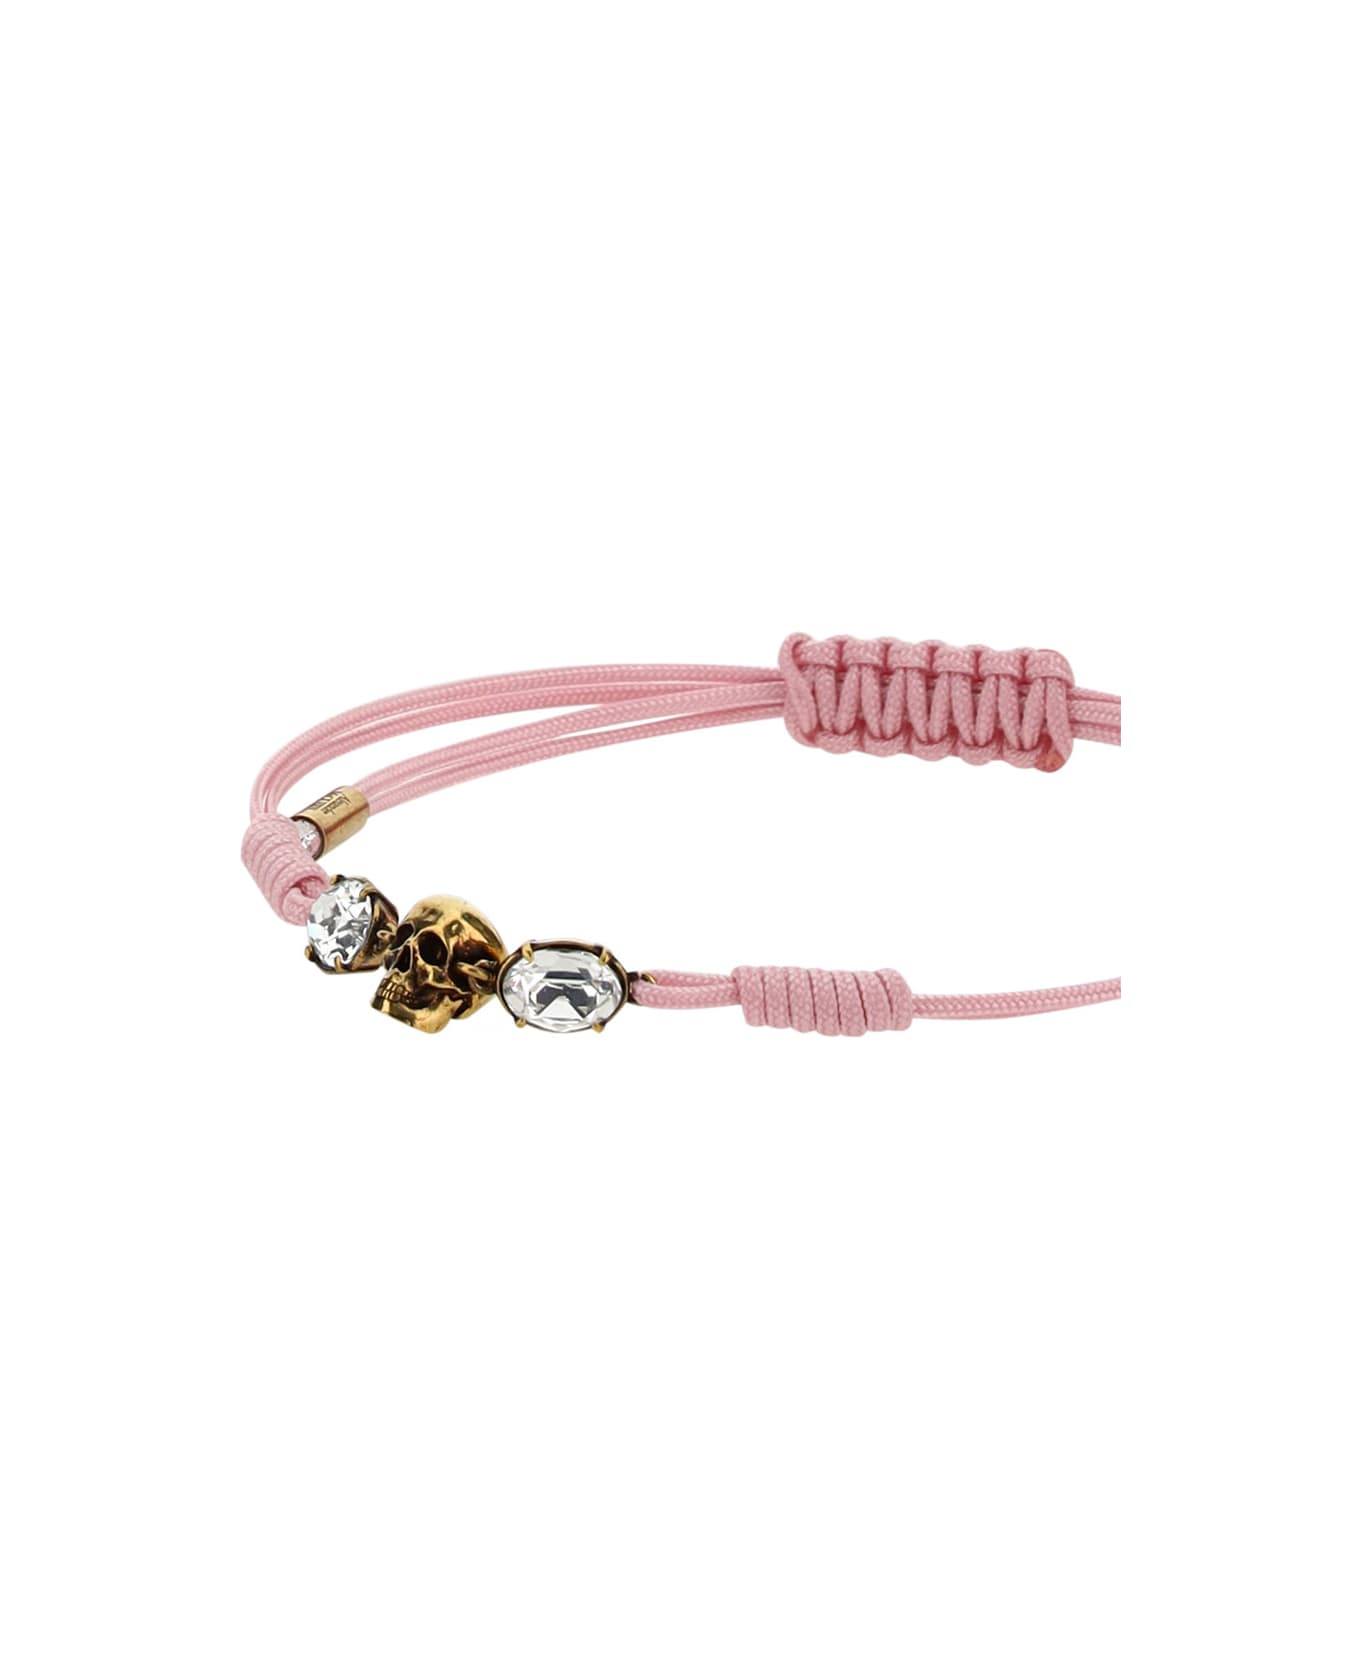 Alexander McQueen Skull Bracelet - Pink ブレスレット